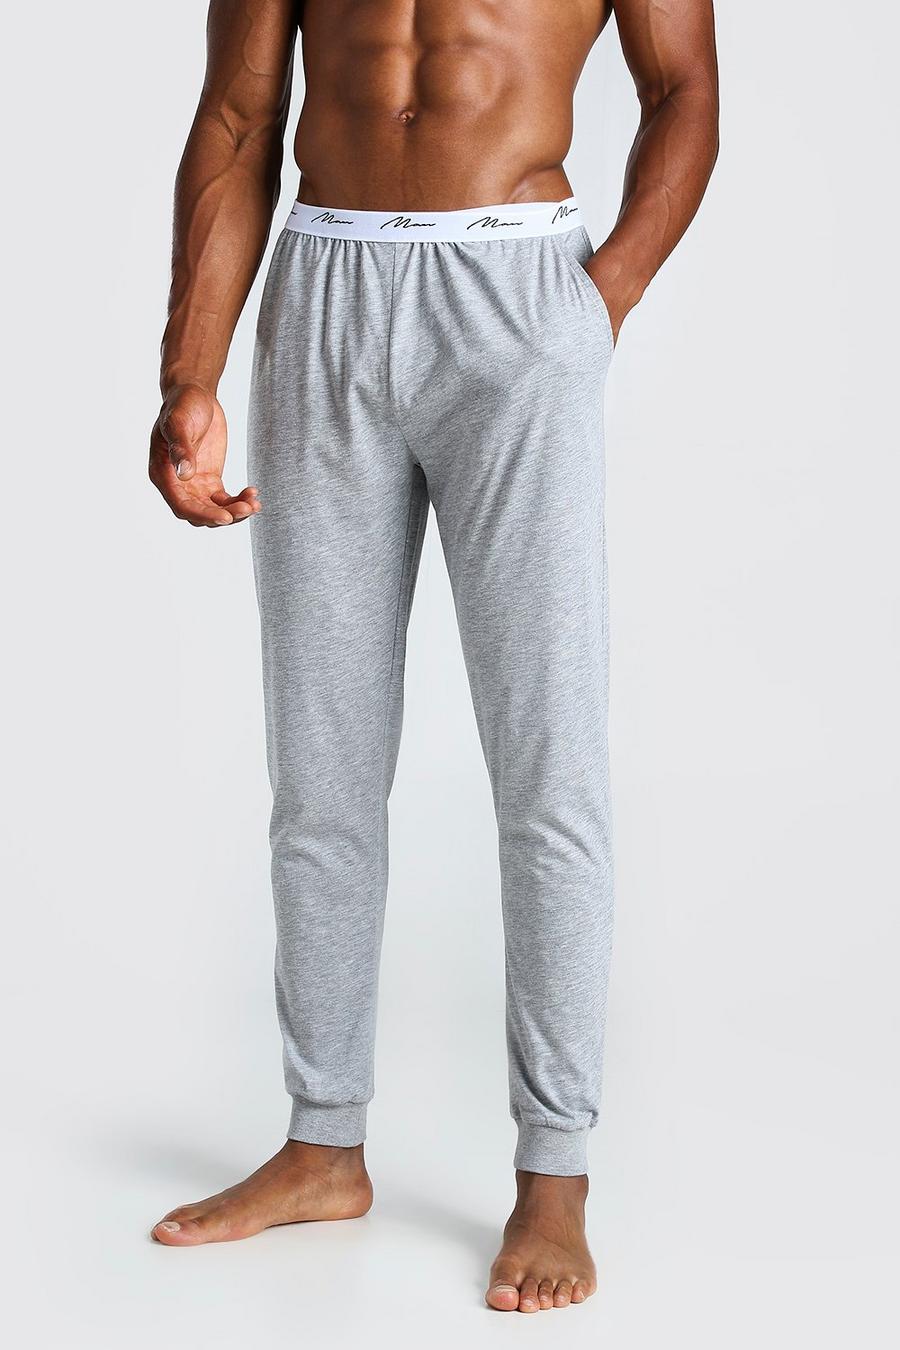 Pantalones deportivos para estar en casa de jacquard con firma MAN y cintura elástica, Gris grigio